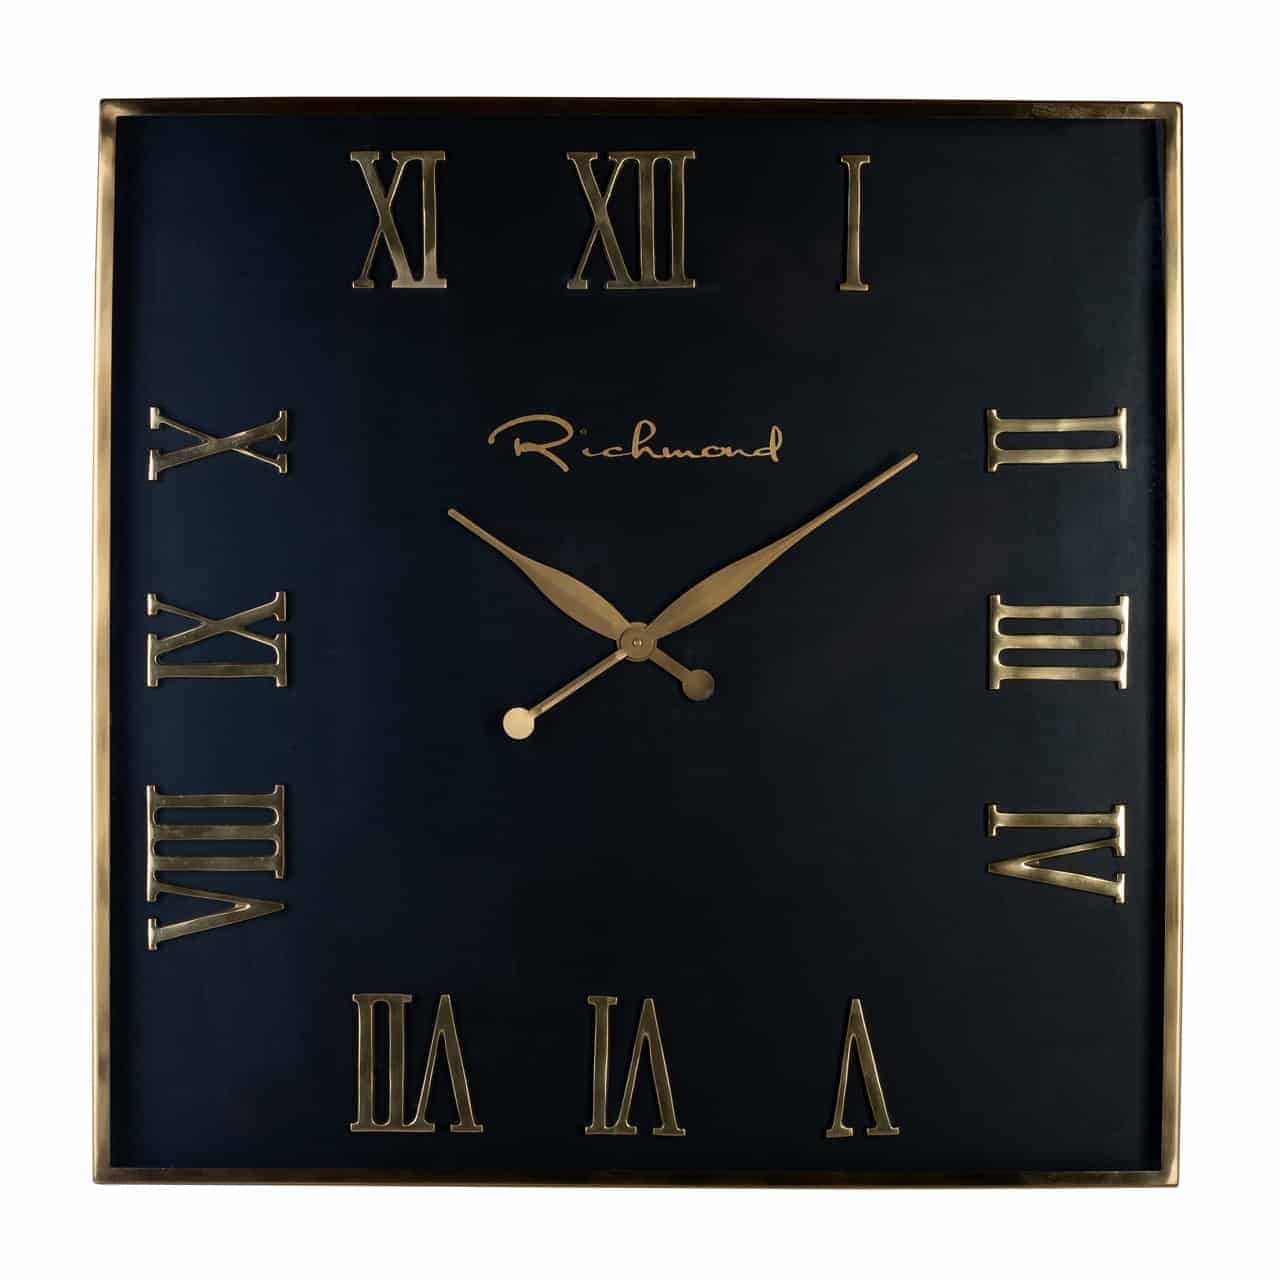 Schwarze, quadratische Wanduhr, an jeder Seite jeweils drei römische Ziffern; mittig spitz zulaufende Uhrzeiger, darüber der Schriftzug "Richmond".